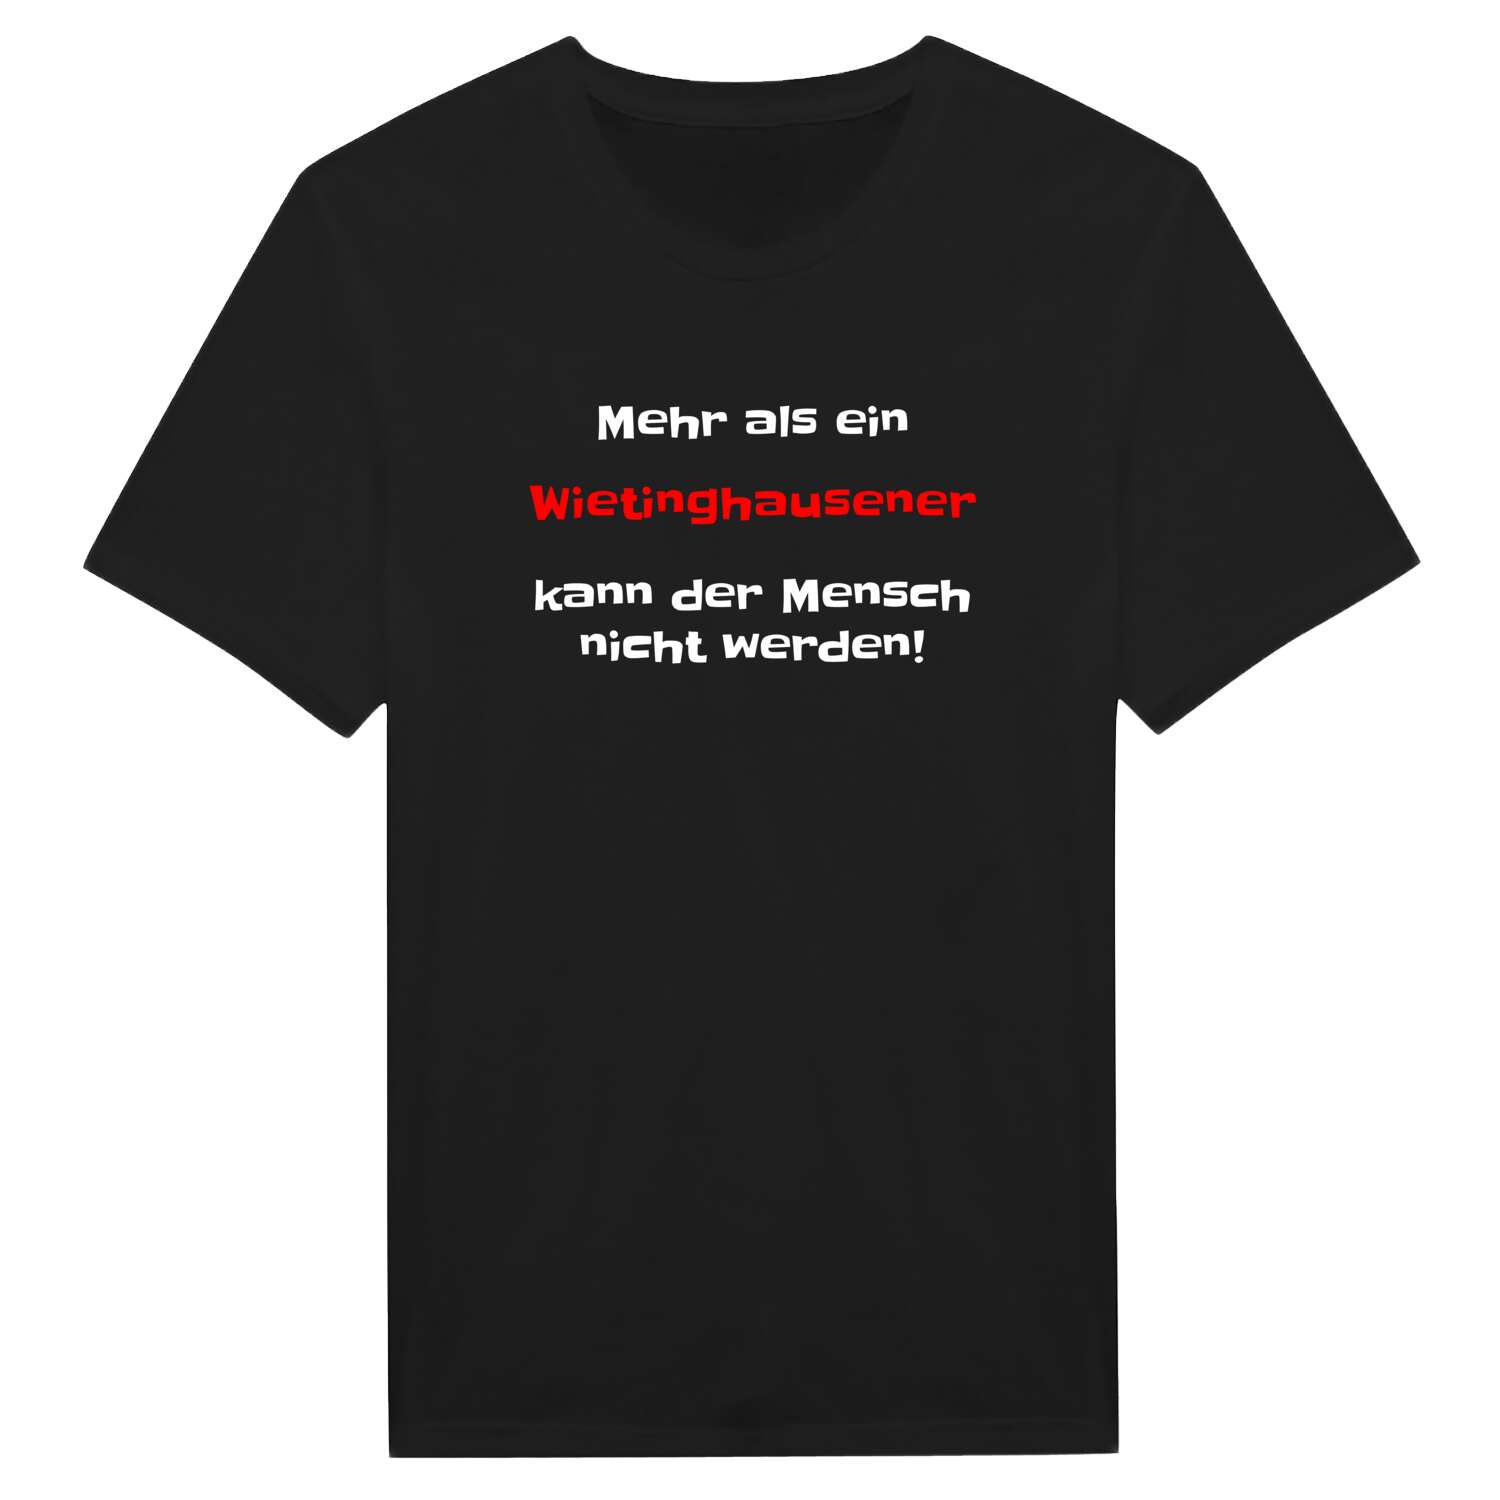 Wietinghausen T-Shirt »Mehr als ein«